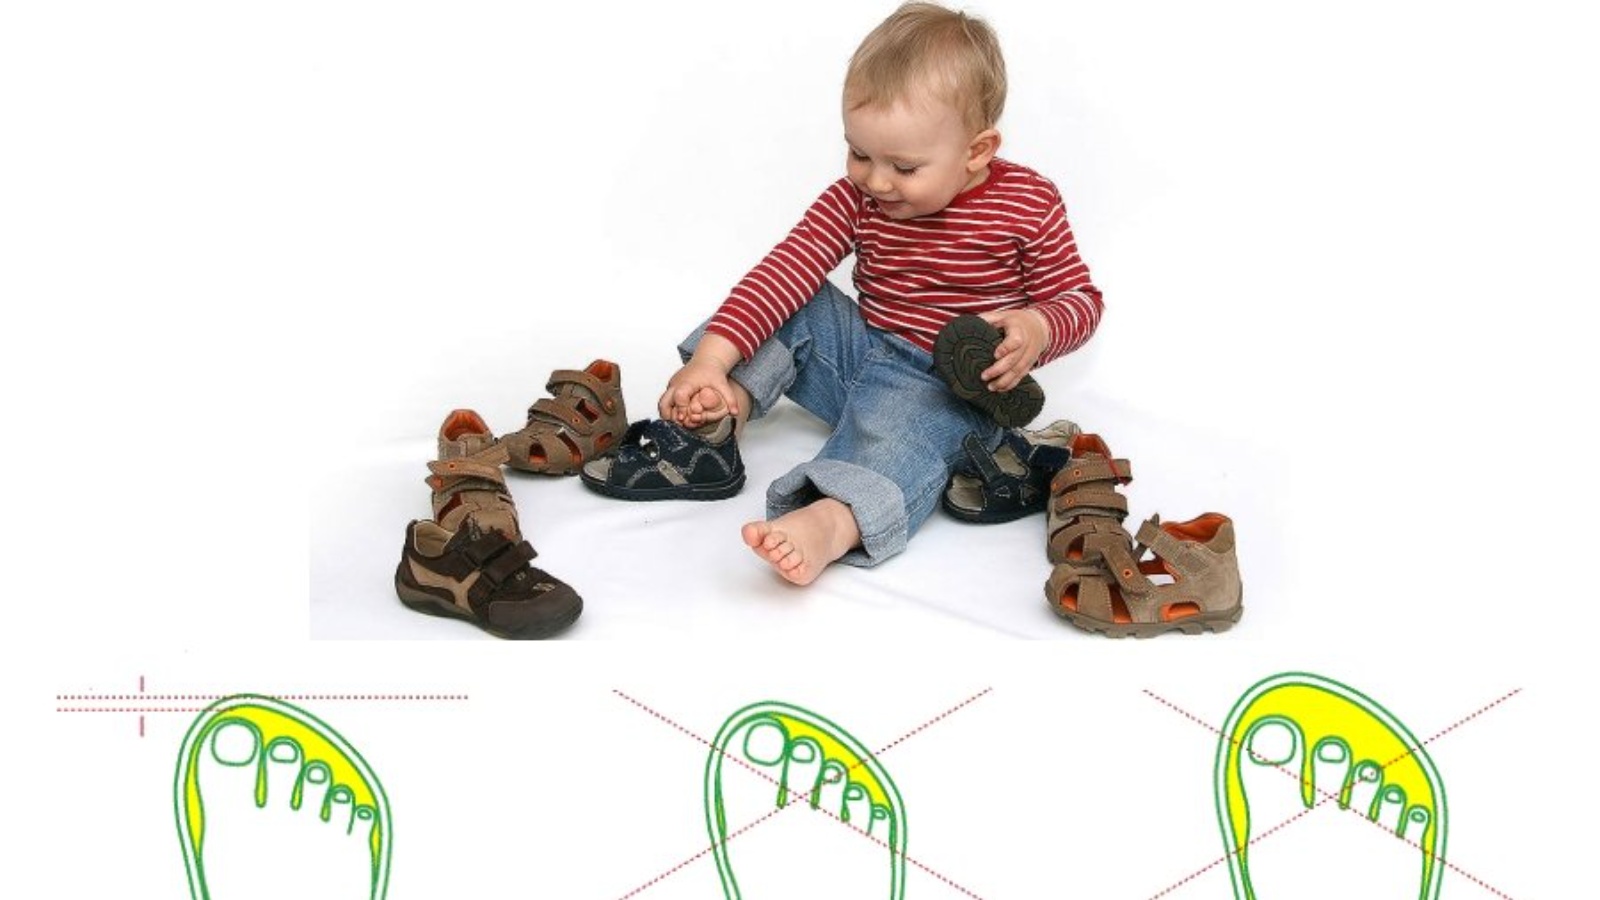 Когда ребенку одевать обувь. Как правильно выбрать обувь ребенку по размеру. Как правильно подобрать размер обуви ребенку в год. Запас обуви для ребенка. Правильная первая обувь для детей 1 года.